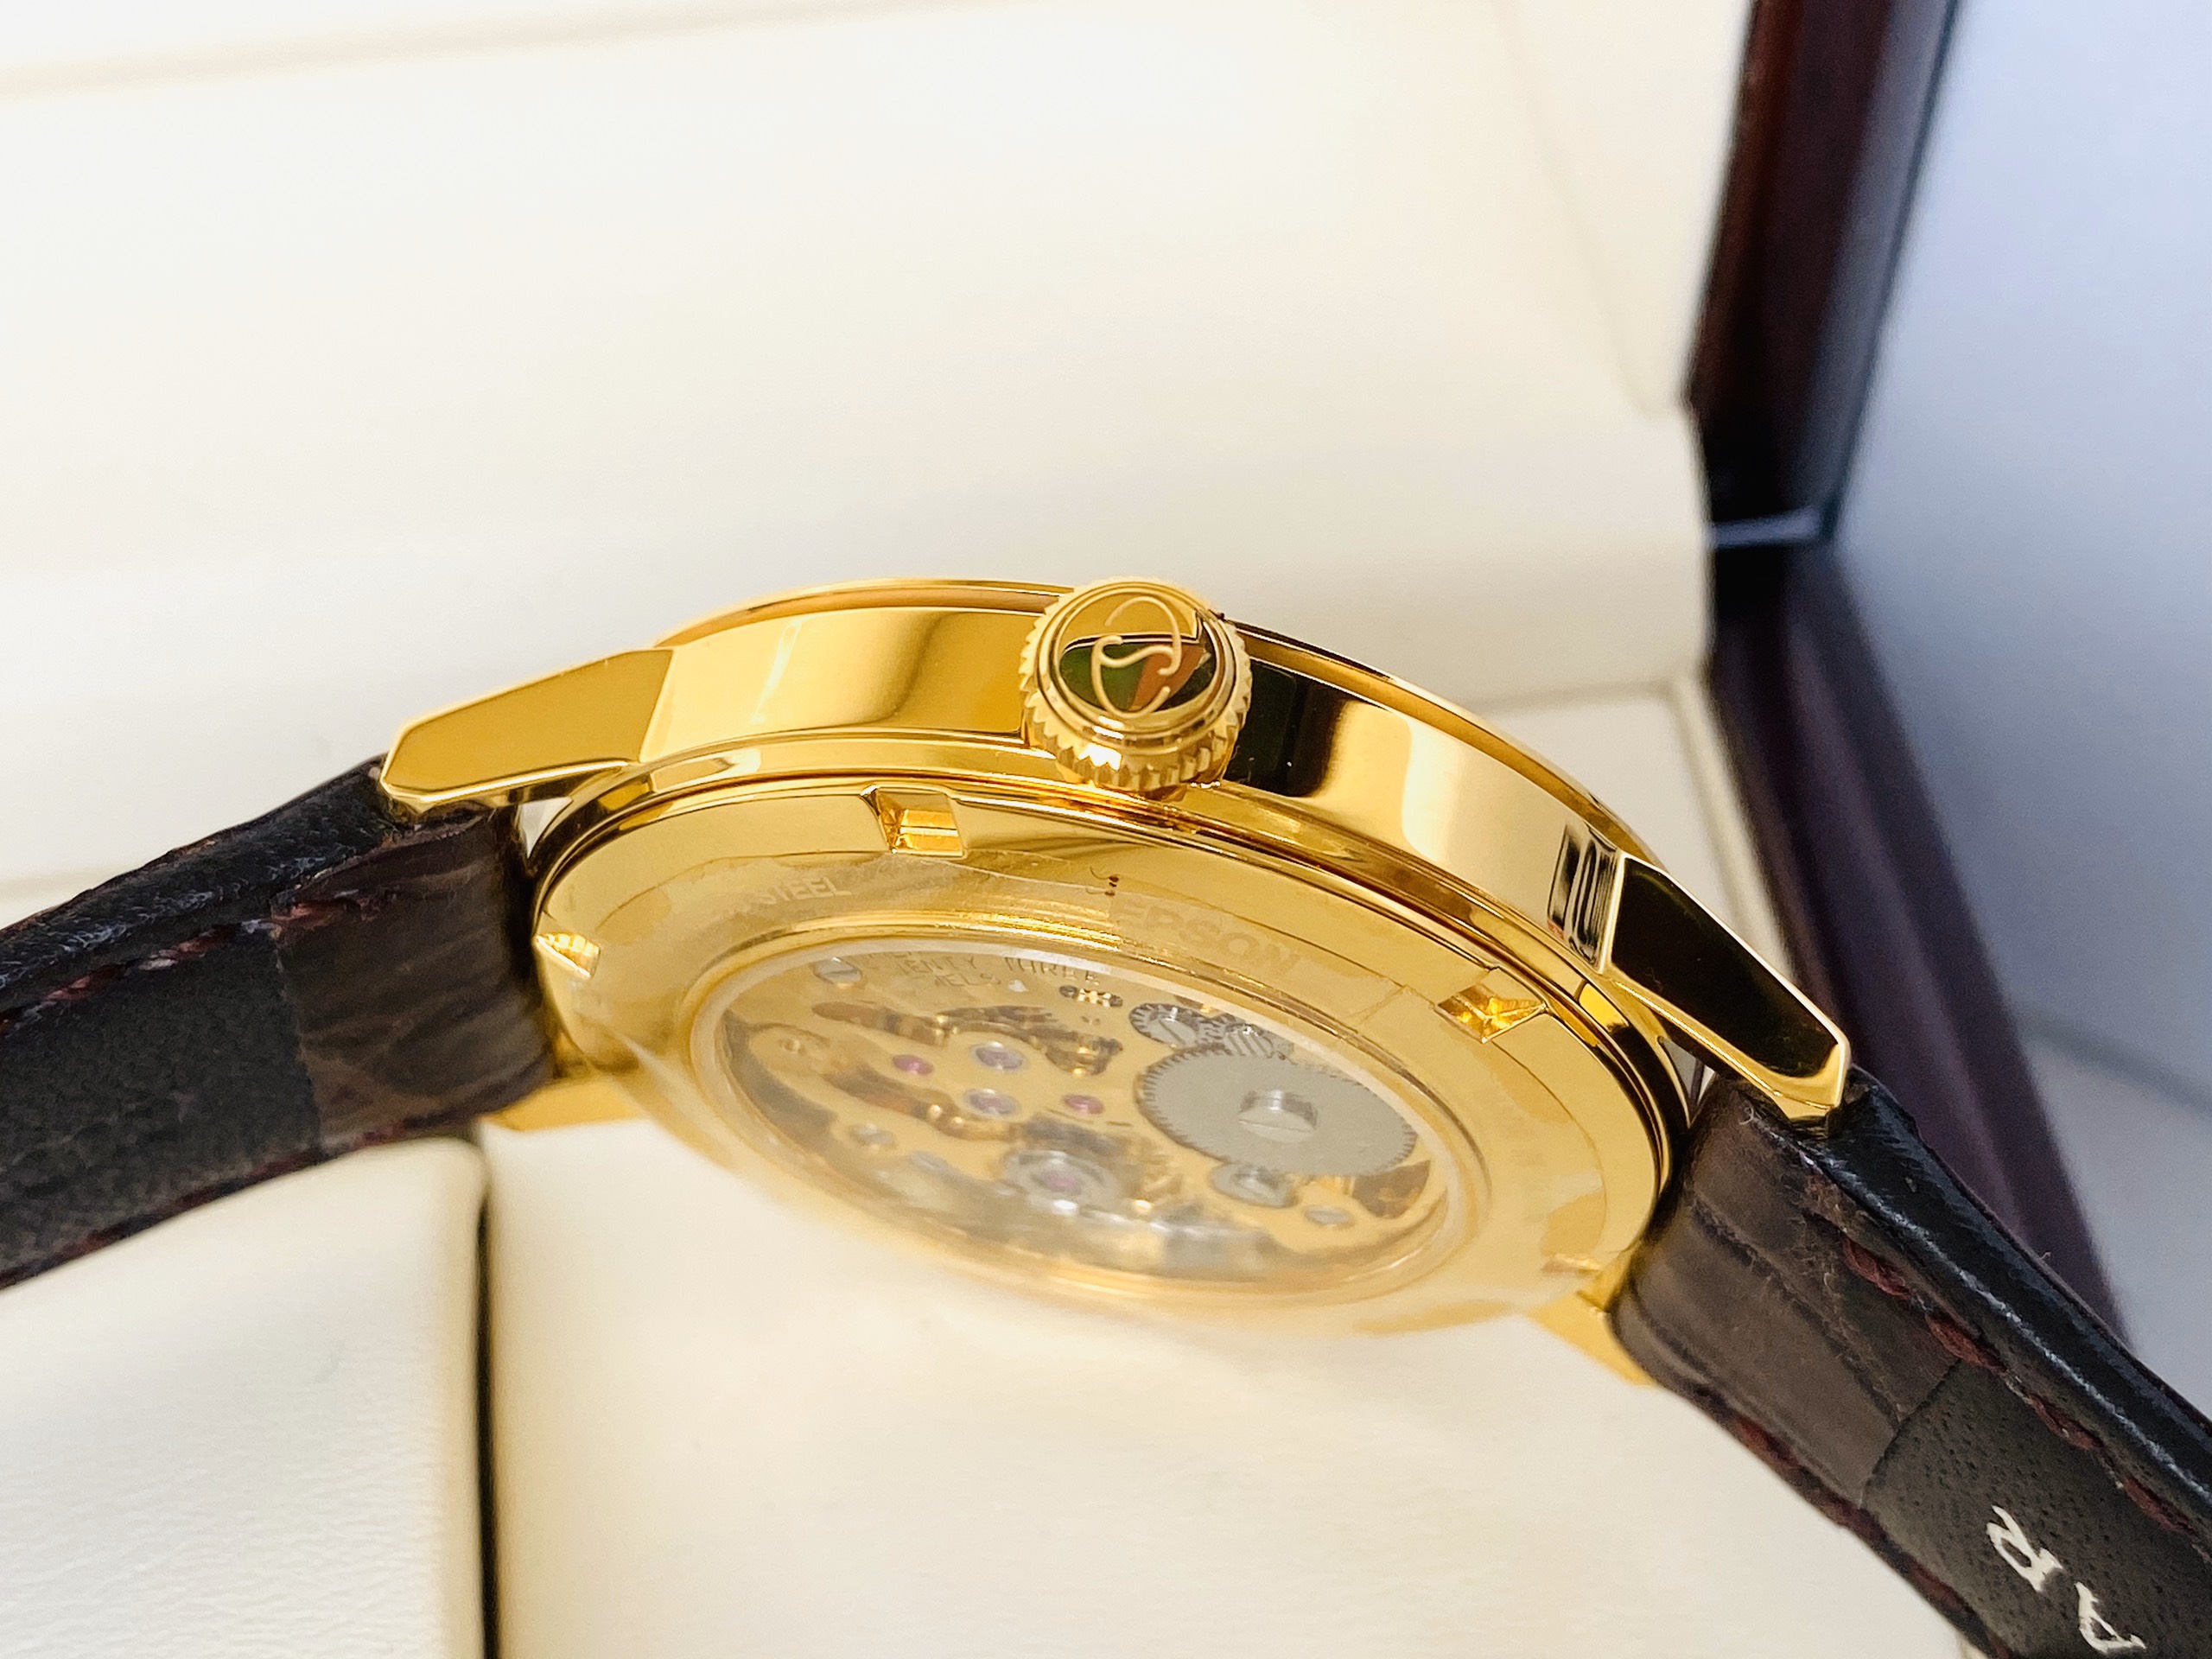 Đồng hồ ORIENT STAR Skeleton WZ0031DX Watch Japan